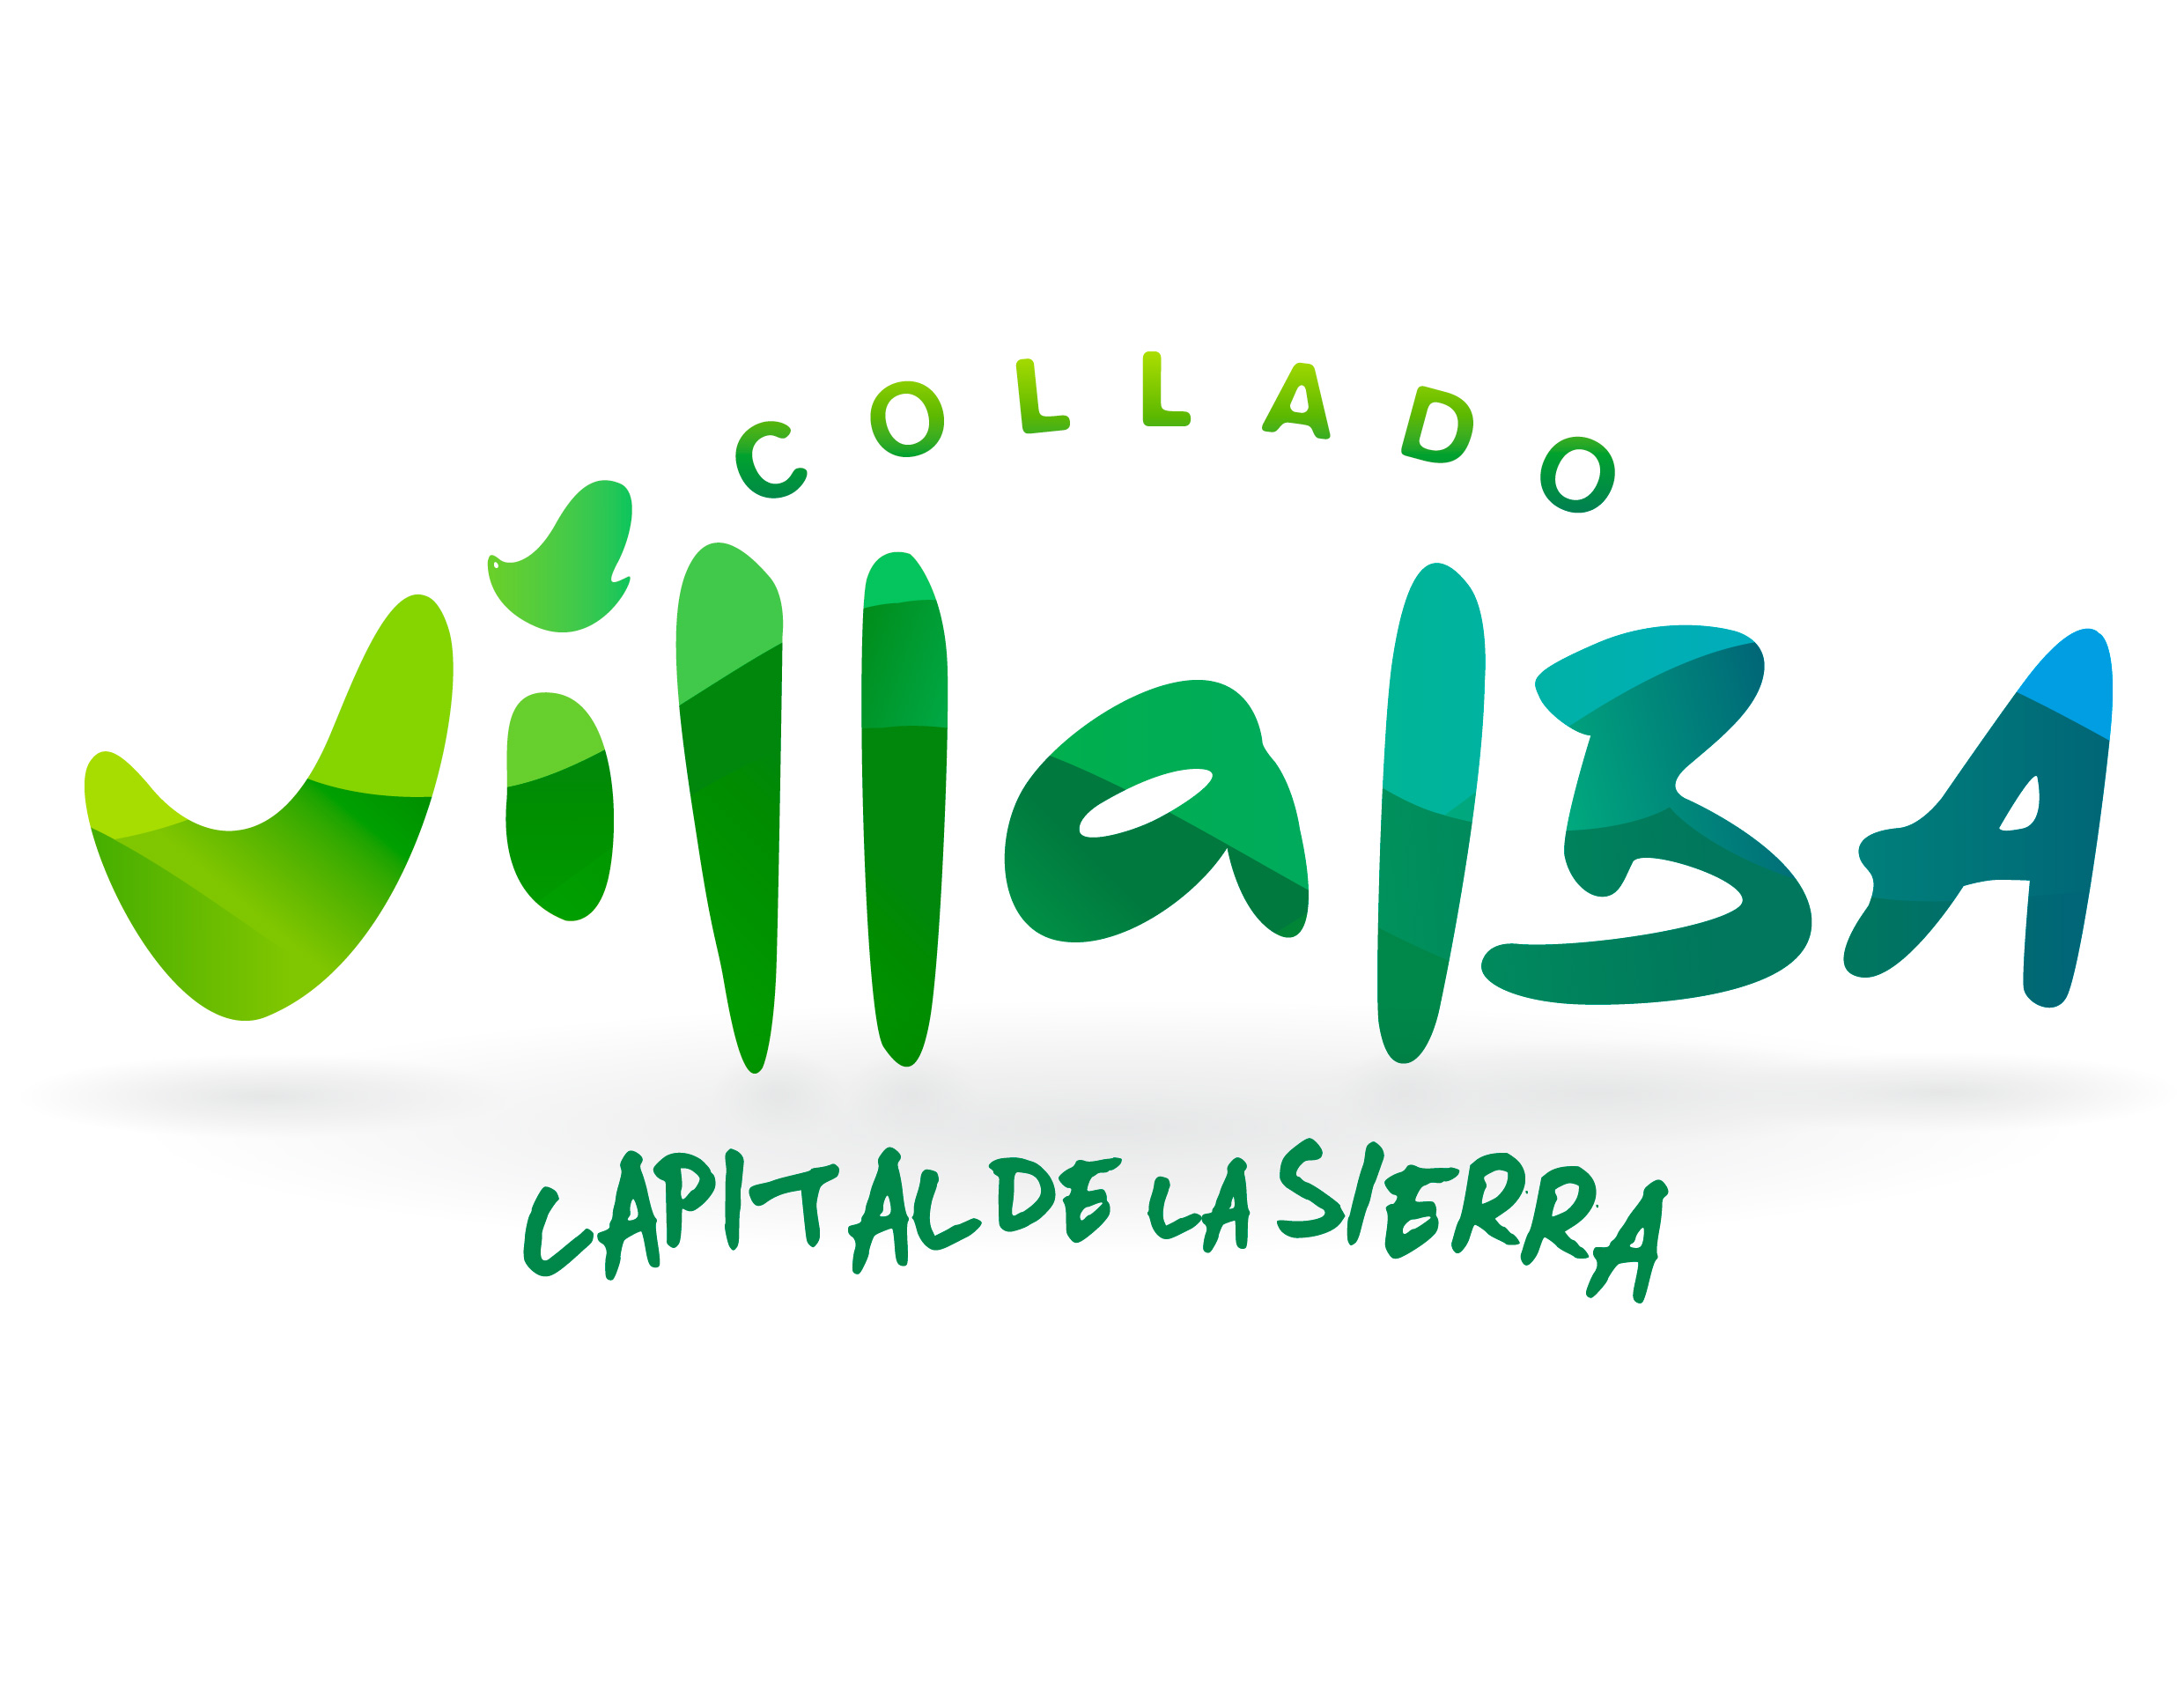 Ayuntamiento de Collado Villalba